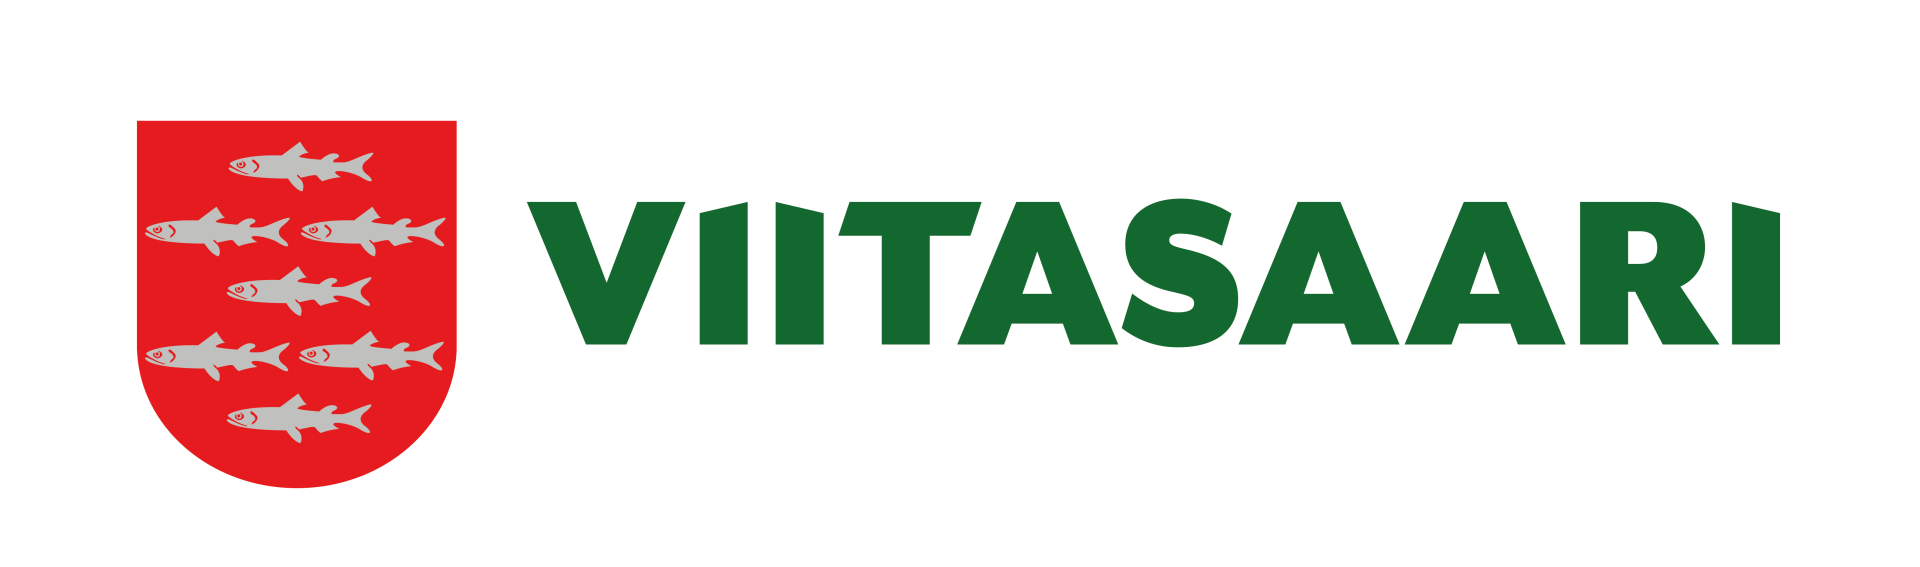 Viitasaaren kaupunki - Logo